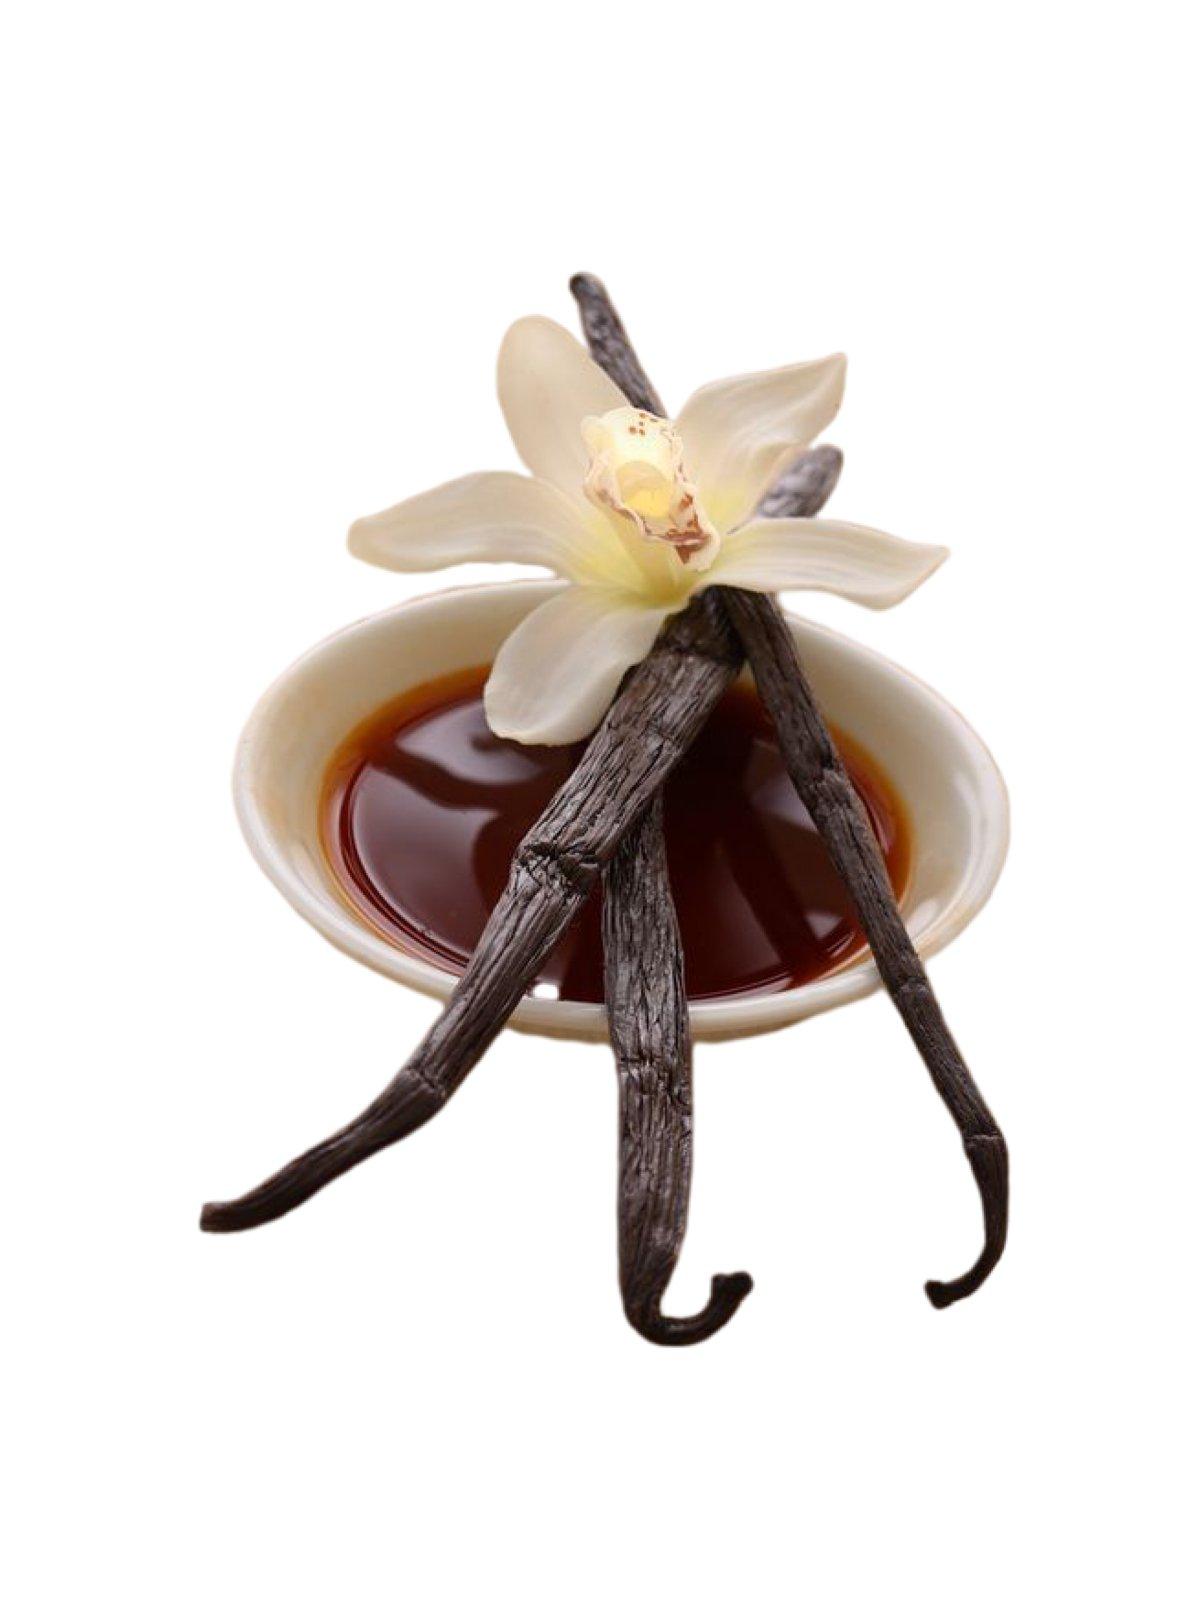 Haricots indonésiens de qualité A à la vanille Planifolia Gourmet<br> Pour l'extrait et la cuisson<br> 1/4 livre, 1/2 livre, 1 livre, 2 livres